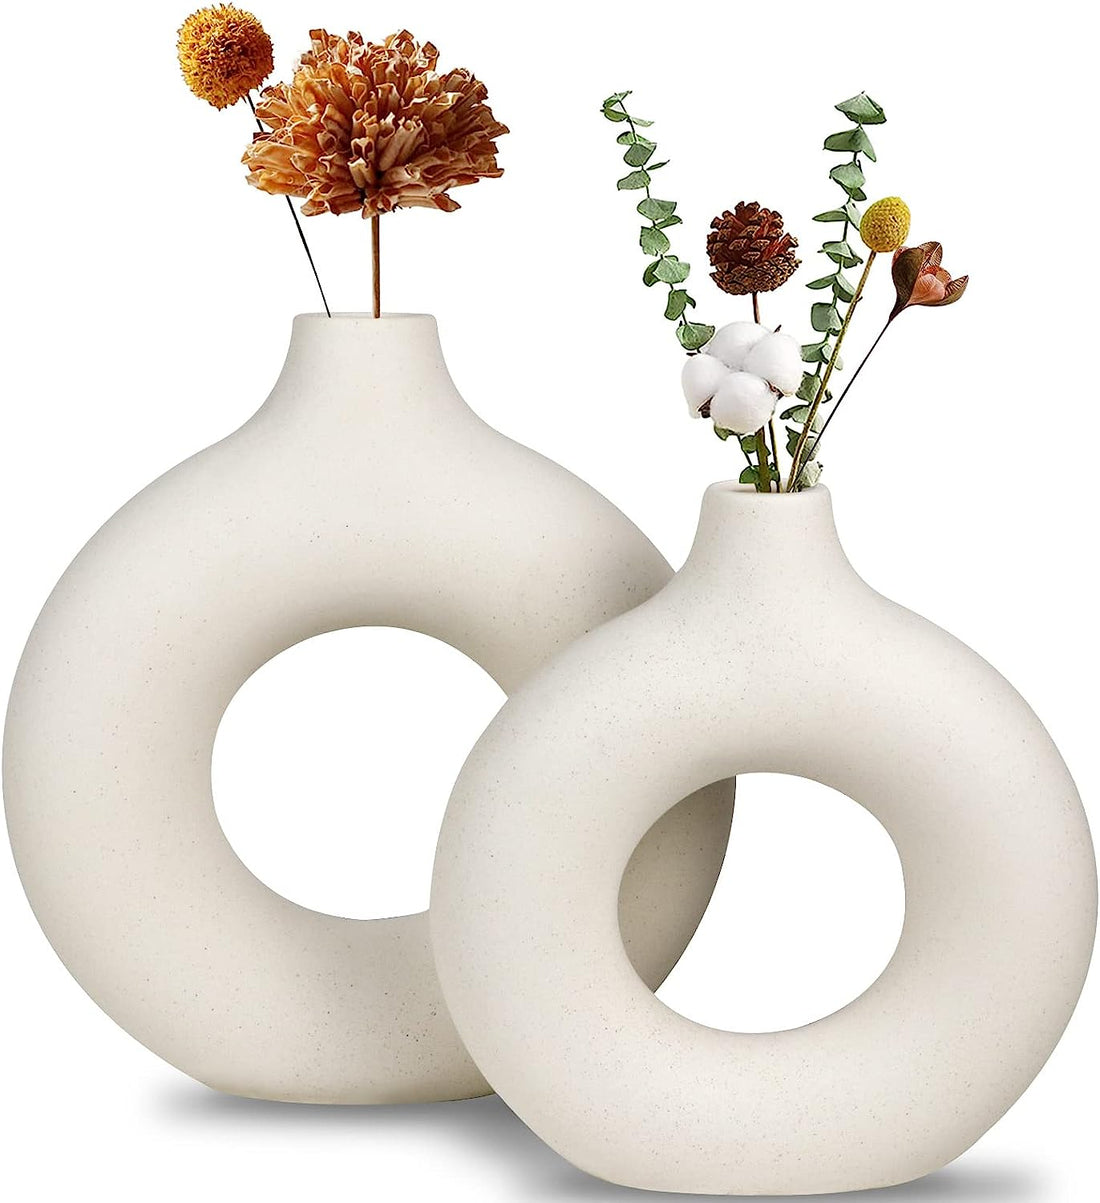 Traditional Ceramic Vase